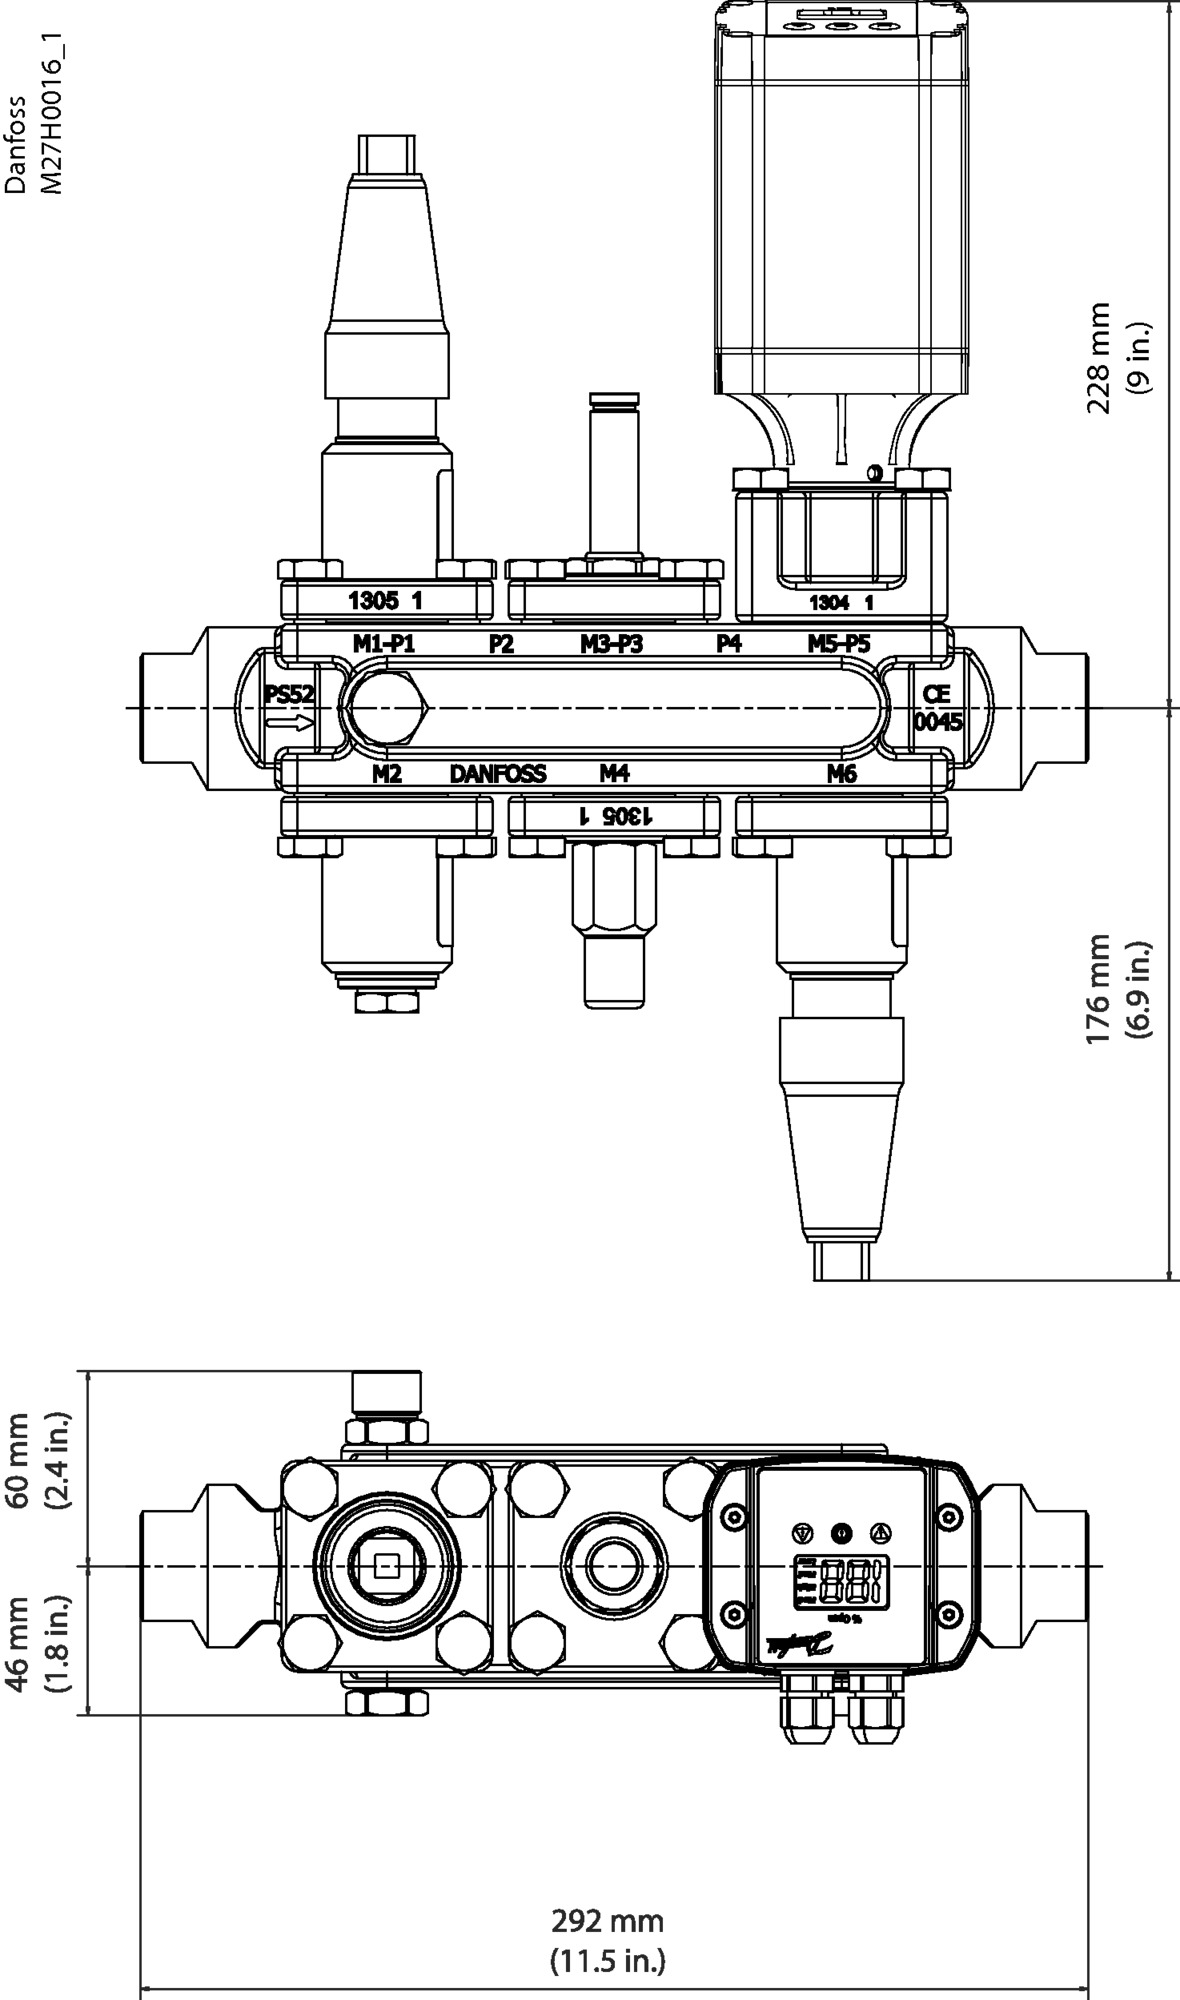 IMG103886495389_preview.jpg | ICF 20 — многофункциональные клапанные станции Данфосс (Danfoss) | официальный сайт Danfoss Россия